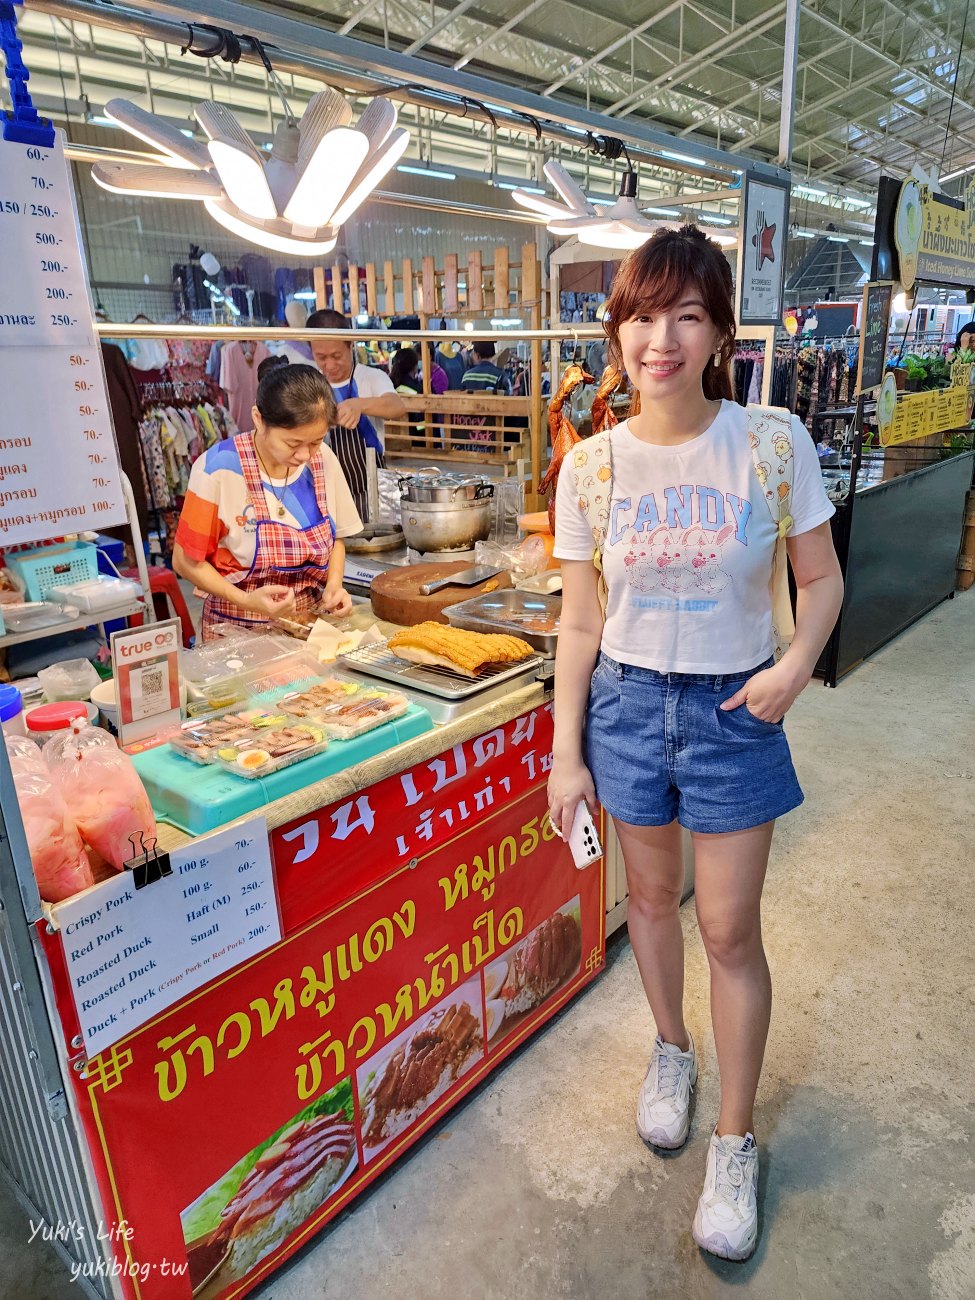 曼谷景點【空叻瑪榮水上市場】超便宜週六週日營業假日市場，好吃好買還能搭船遊河 - yukiblog.tw